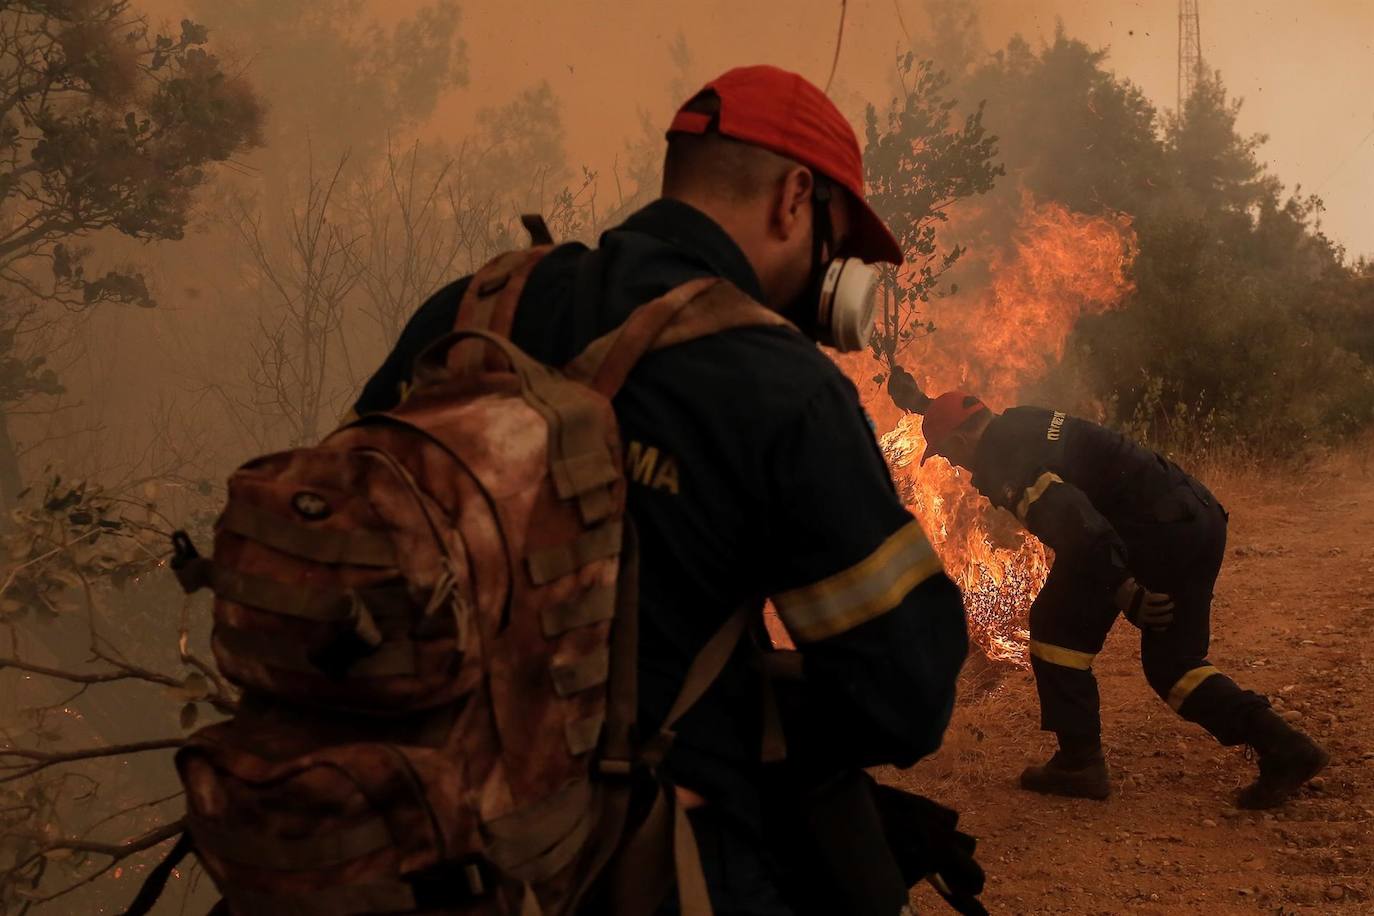 Grecia investiga si una organización criminal está detrás de los incendios